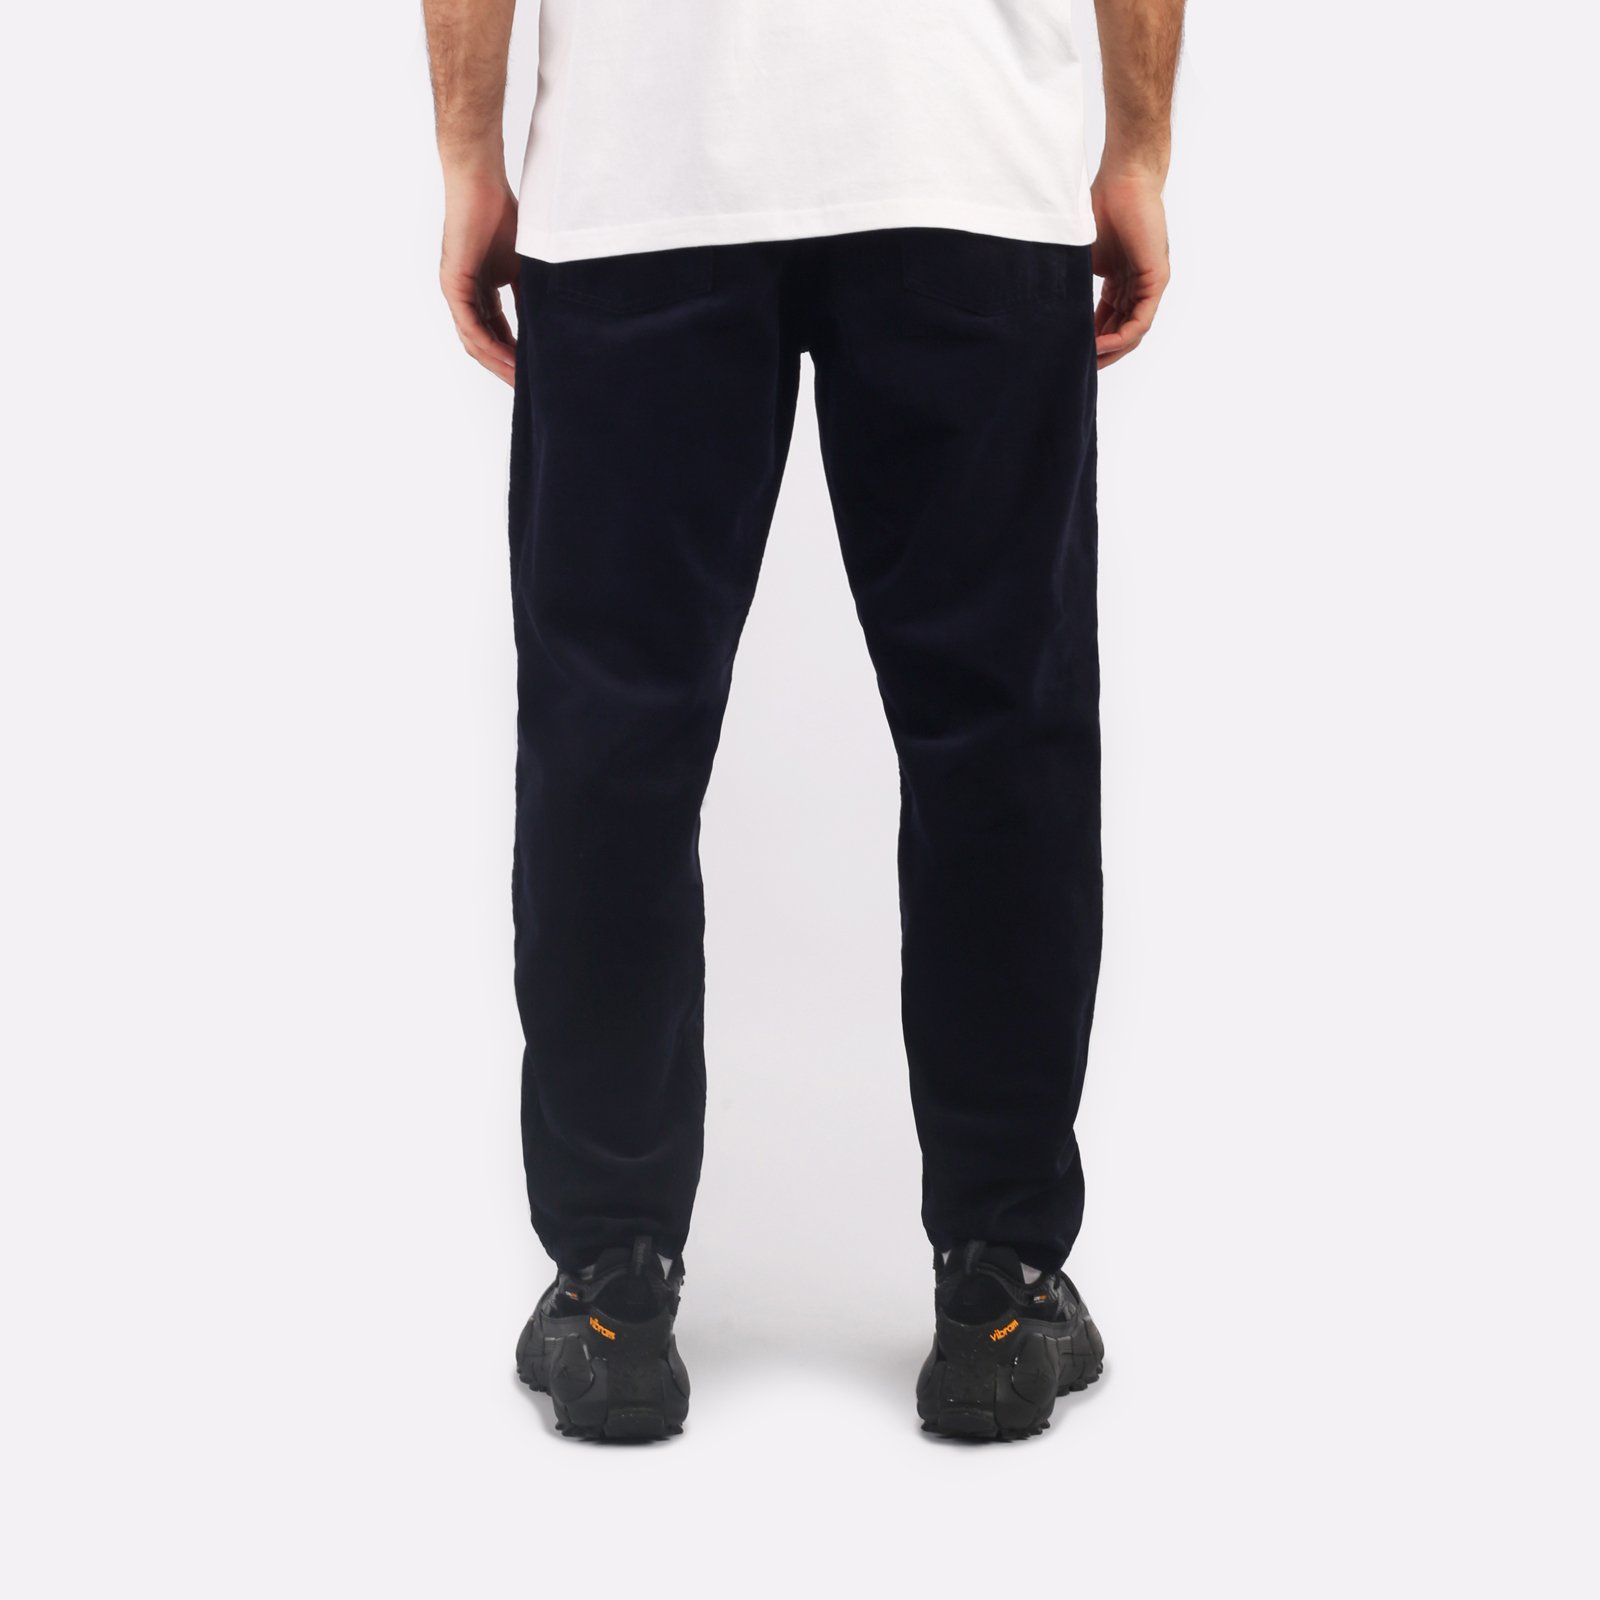 мужские брюки Carhartt WIP Newel Pant  (I031456-dark_navy)  - цена, описание, фото 2